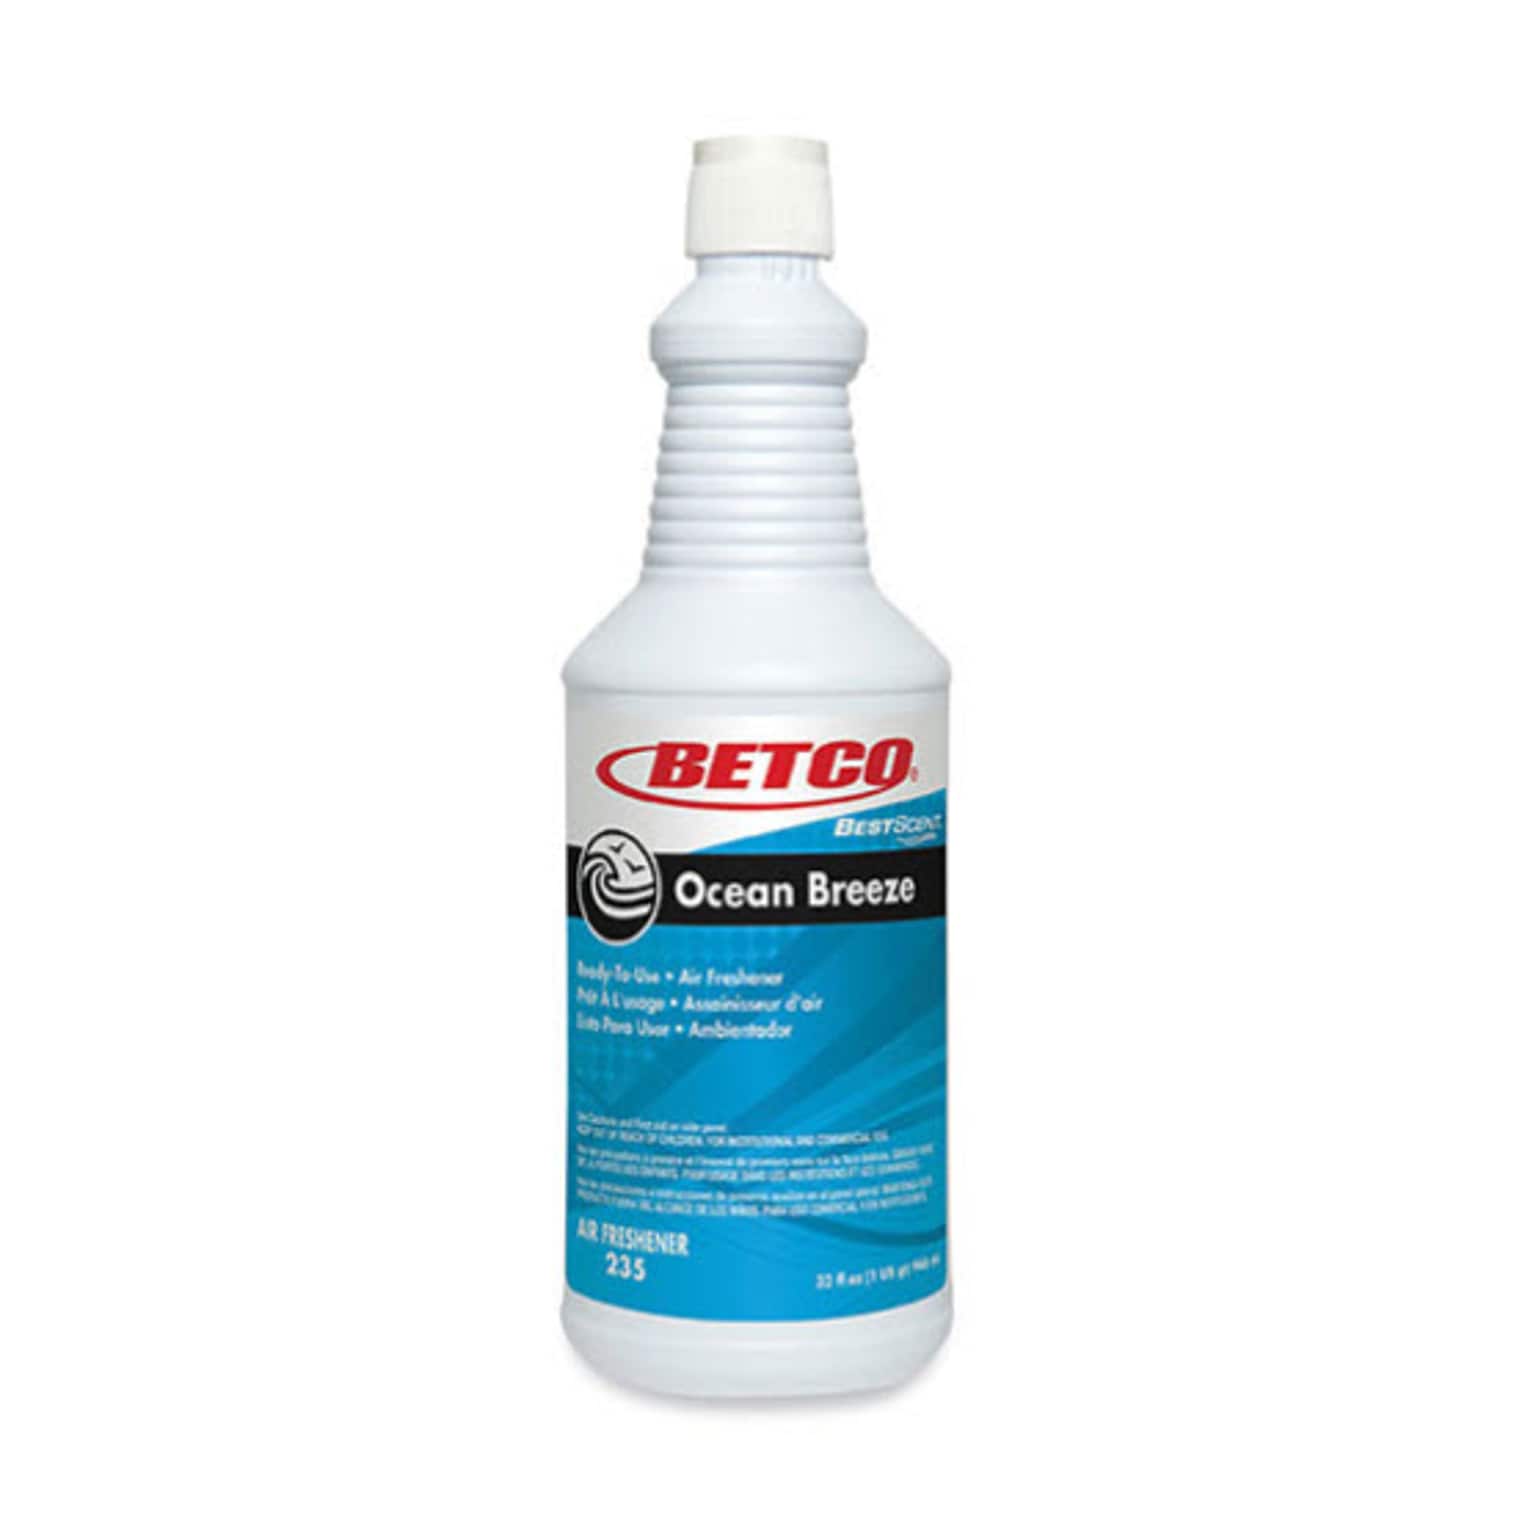 Betco BestScent Ocean Breeze RTU Deodorizer, Ocean Breeze Scent, 32 oz Spray Bottle, 12/Carton